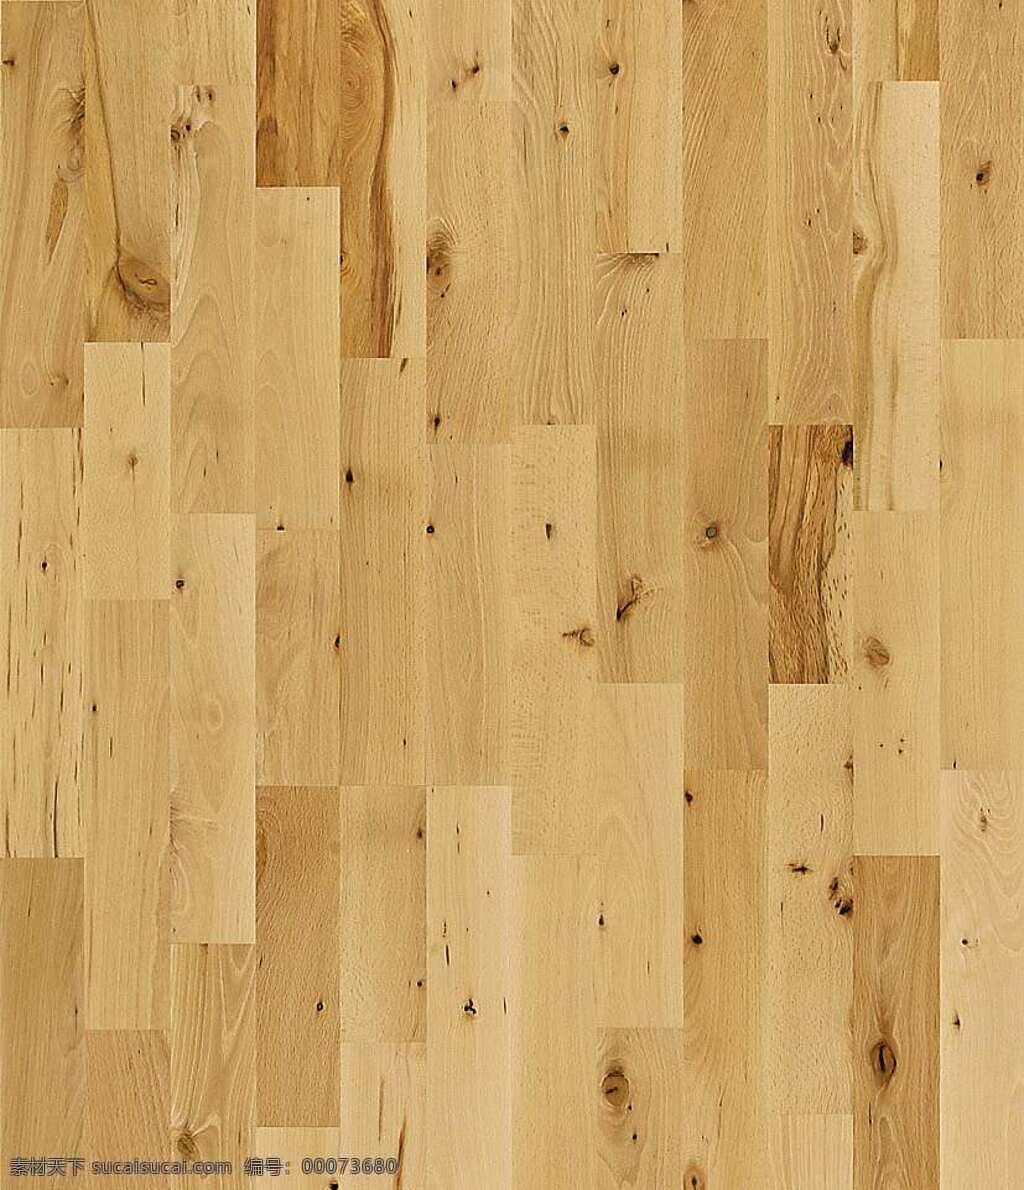 木地板 贴图 装修 效果图 地板贴图 木地板贴图 木地板效果图 室内设计 木地板材质 装饰素材 室内装饰用图